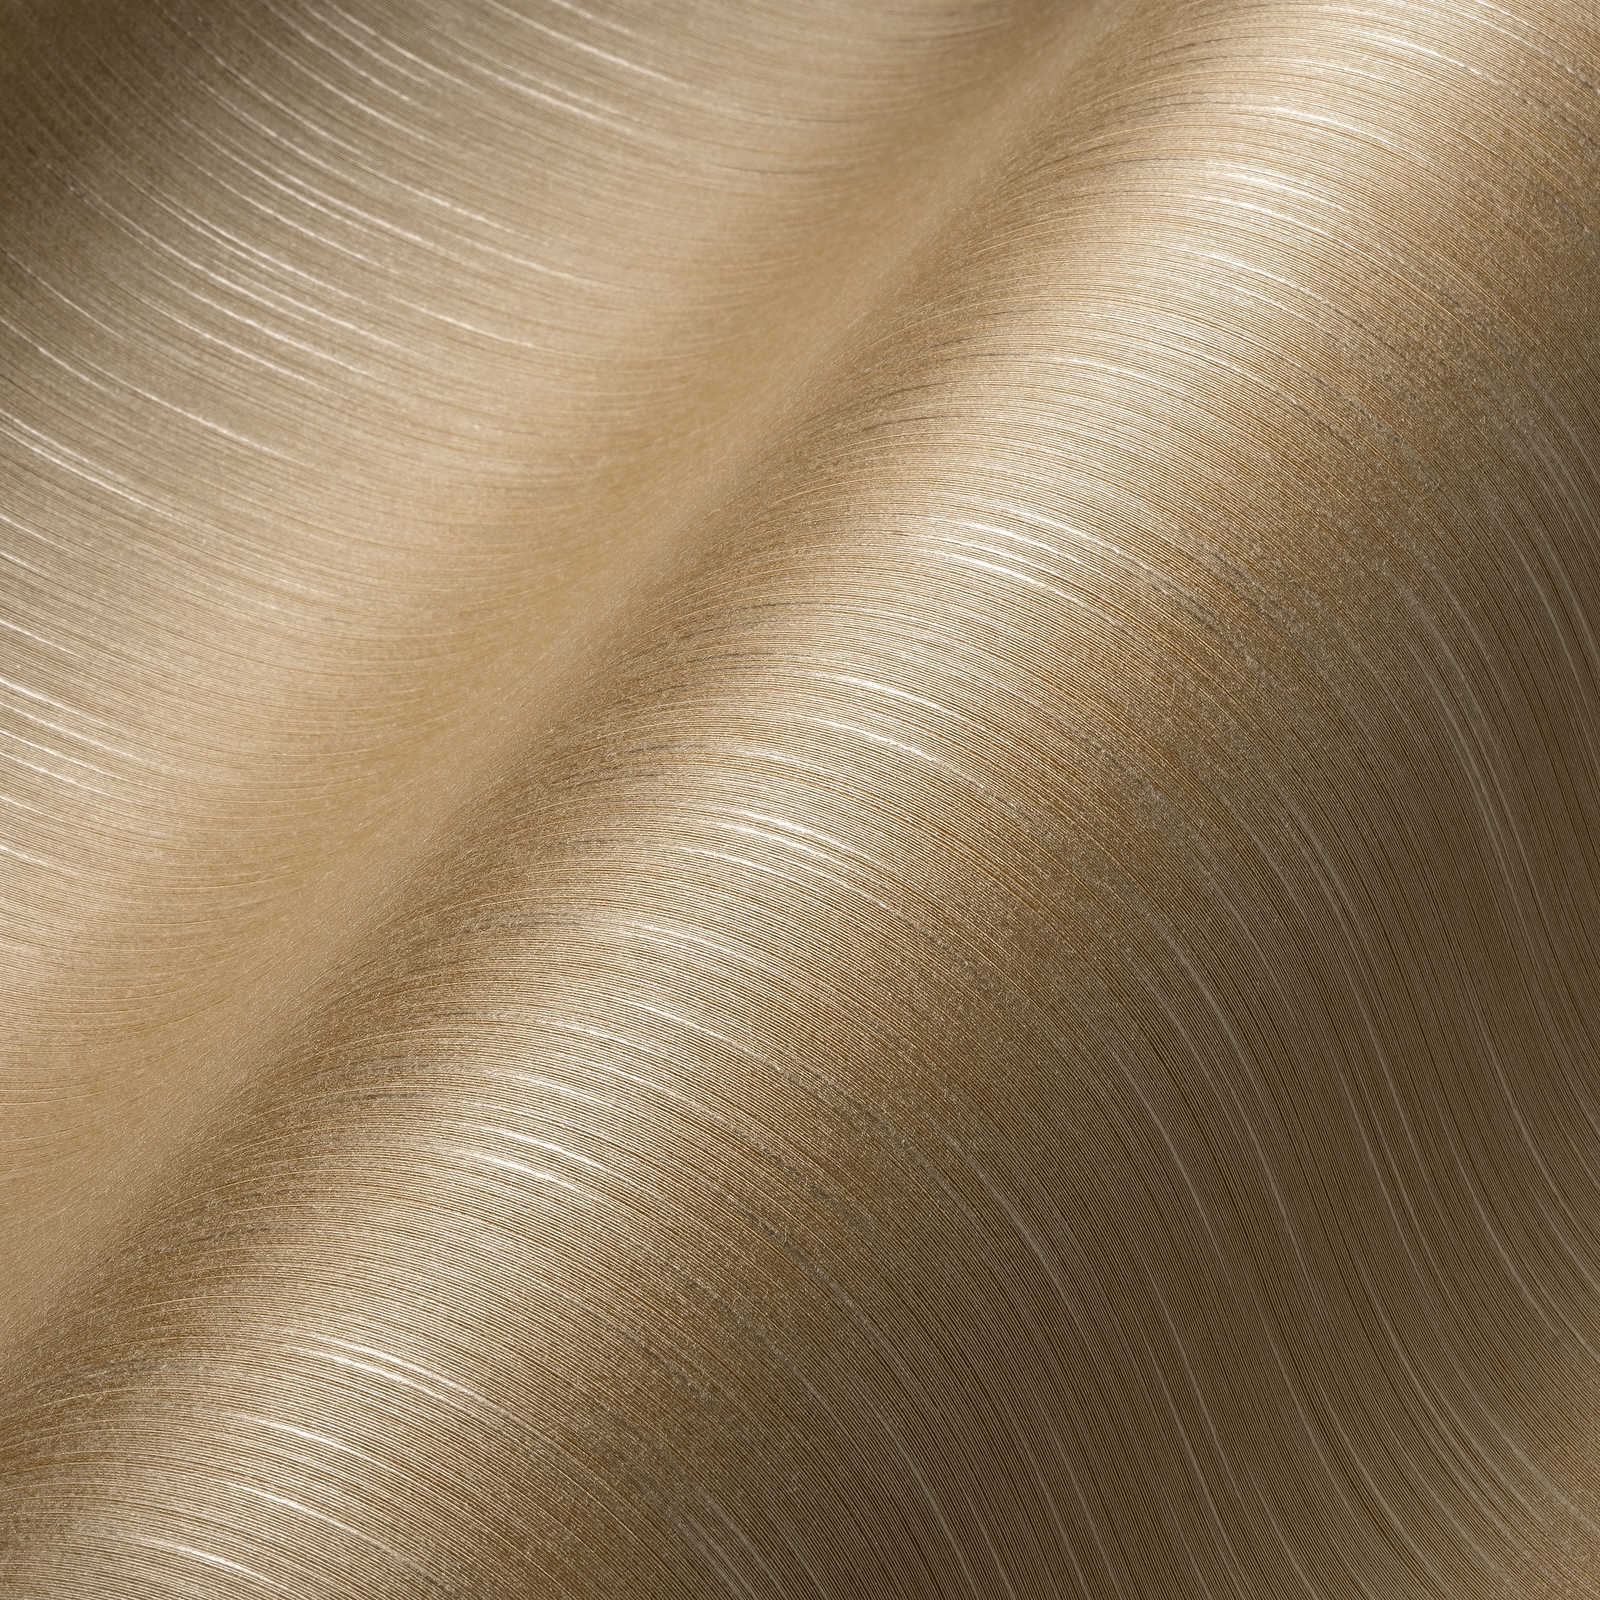             Papier peint aspect sable Beige chiné avec structure textile
        